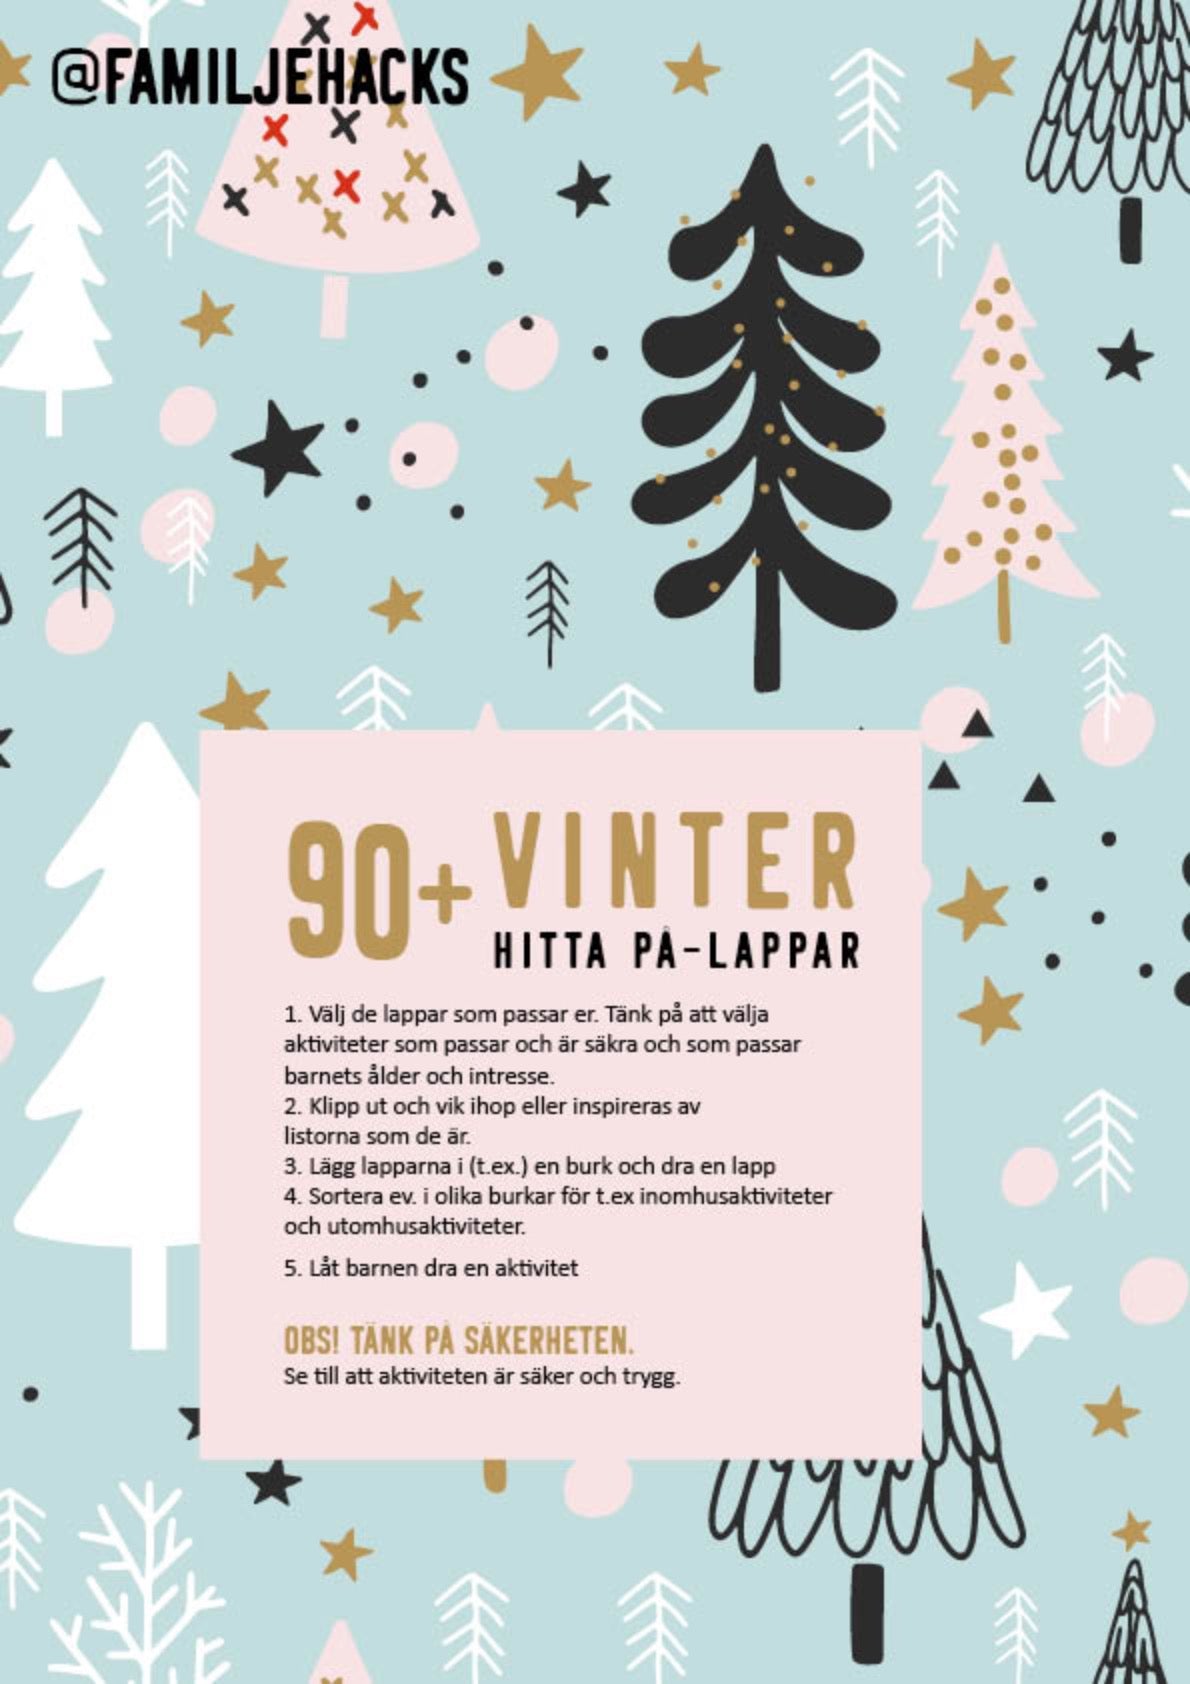 Hitta på-lappar: Vinter & jul